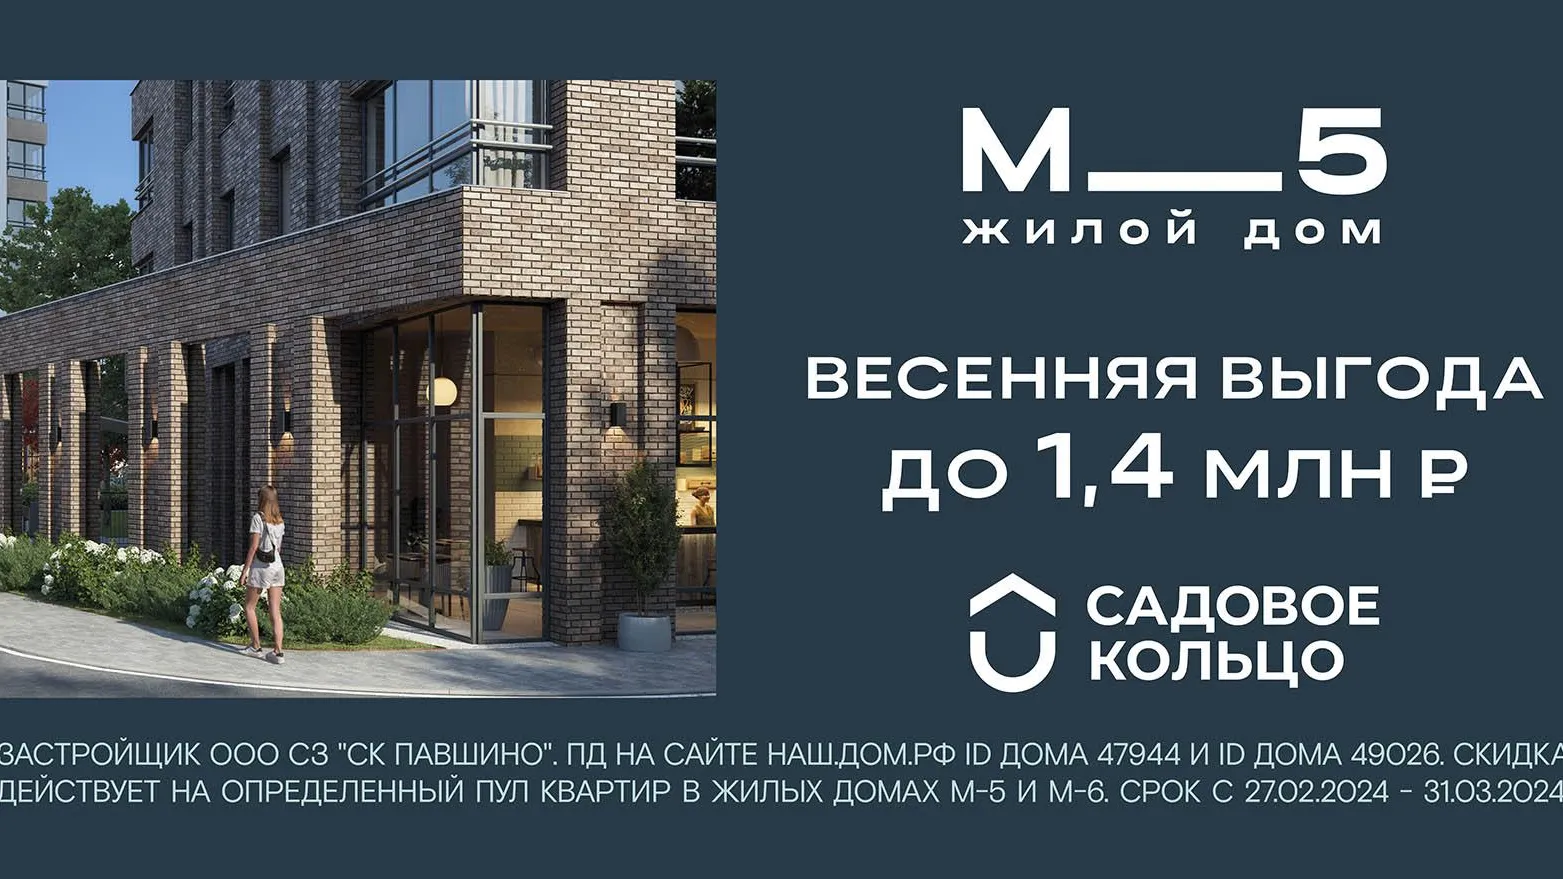 Квартиры в комплексе «М_5» продаются с выгодой до 1,4 млн руб | РИАМО